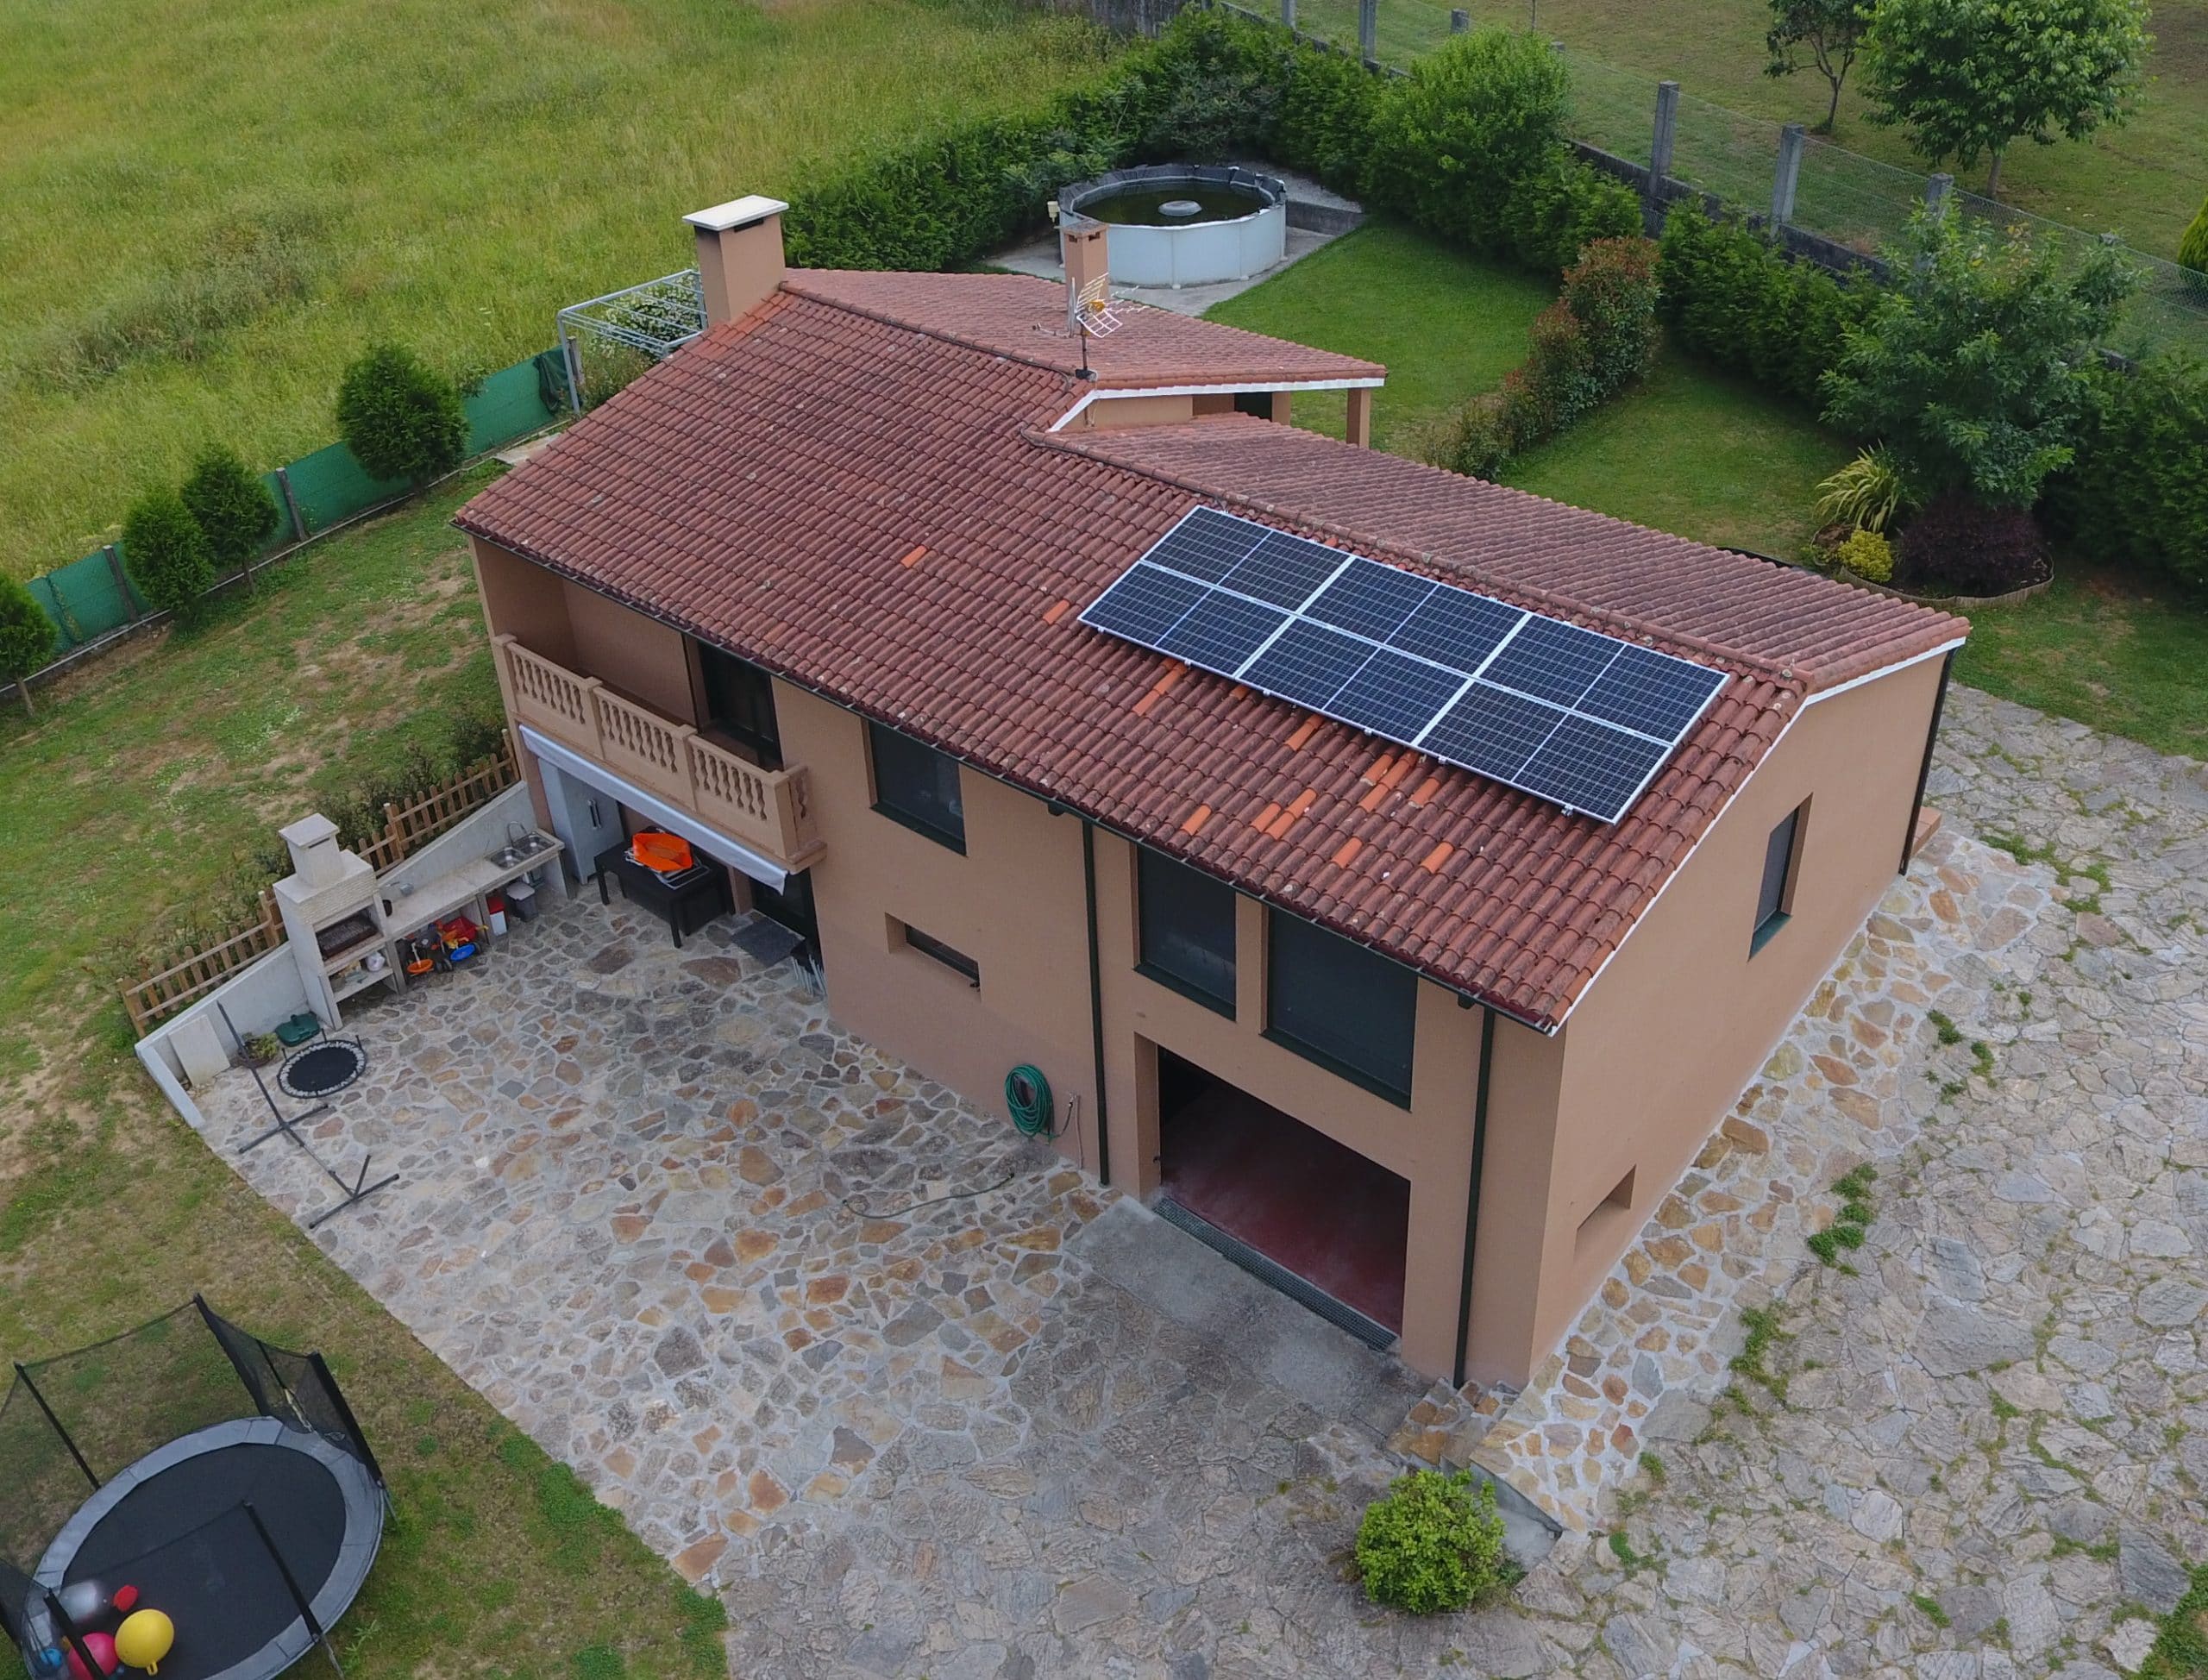 instalación fotovoltaica para autoconsumo en vivienda unifamiliar